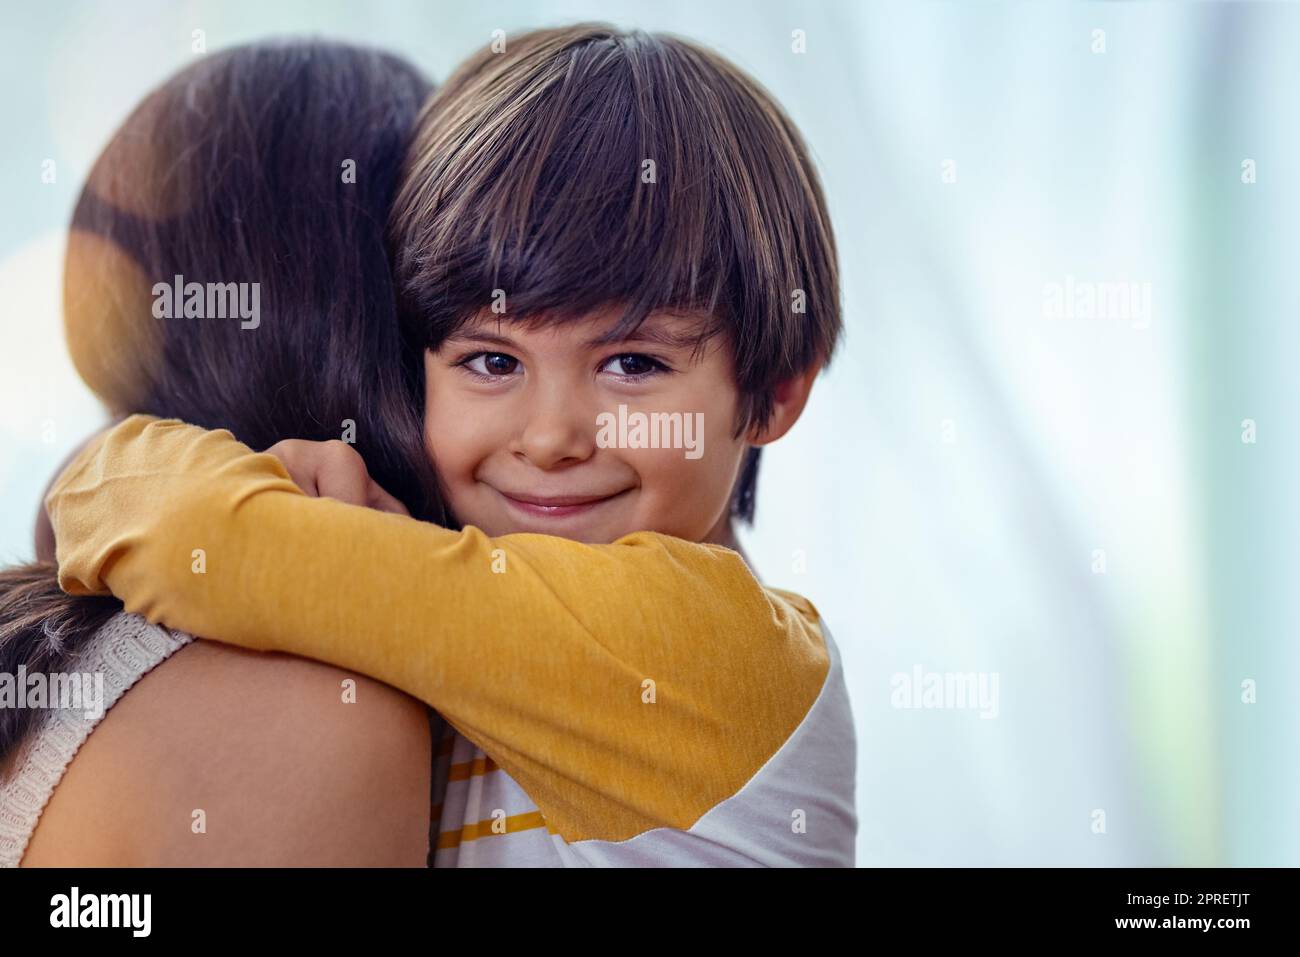 L'amore più bello e duraturo che c'è: Un adorabile ragazzino che abbraccia affettuosamente la madre a casa. Foto Stock